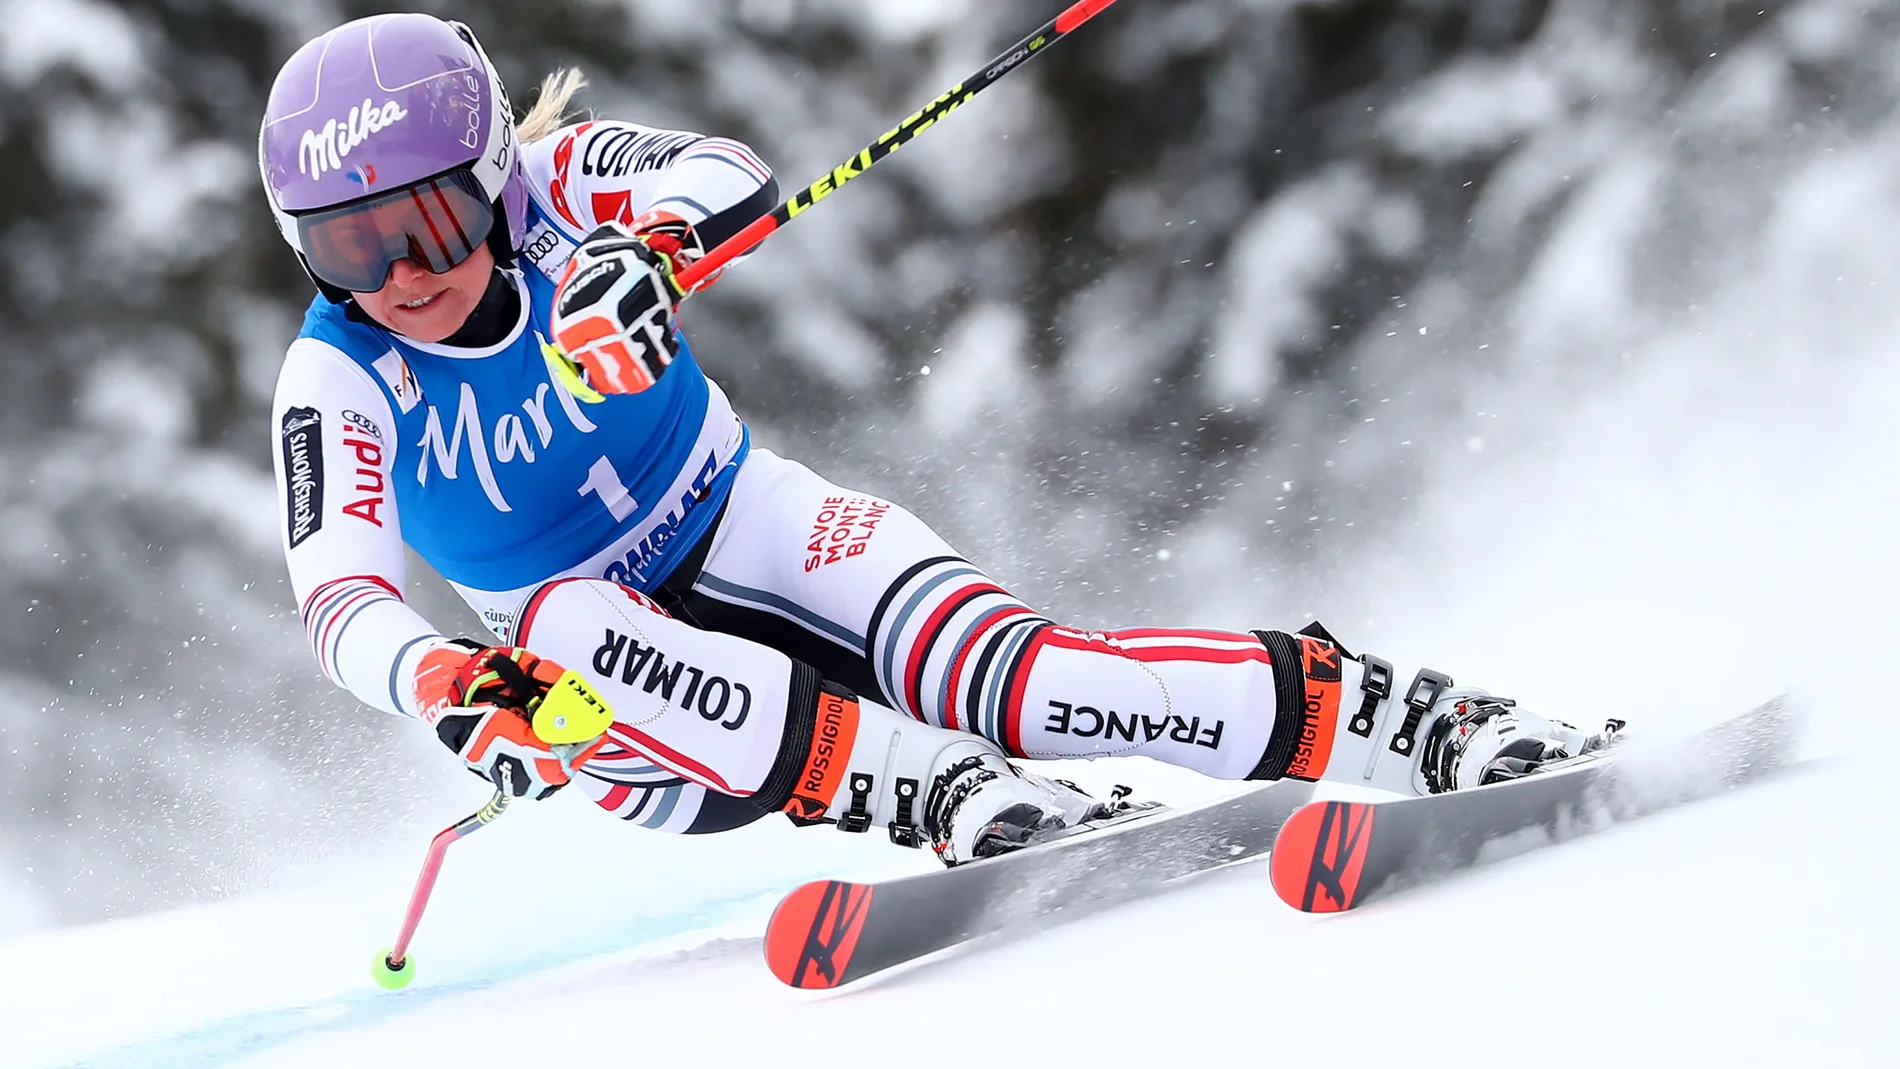 Tessa Worley, de Francia, en acción durante la carrera de eslalon gigante femenino en la Copa del Mundo de Esquí Alpino de la FIS en Kronplatz, Italia, el 26 de enero de 2021. EFE/EPA/ANDREA SOLERO